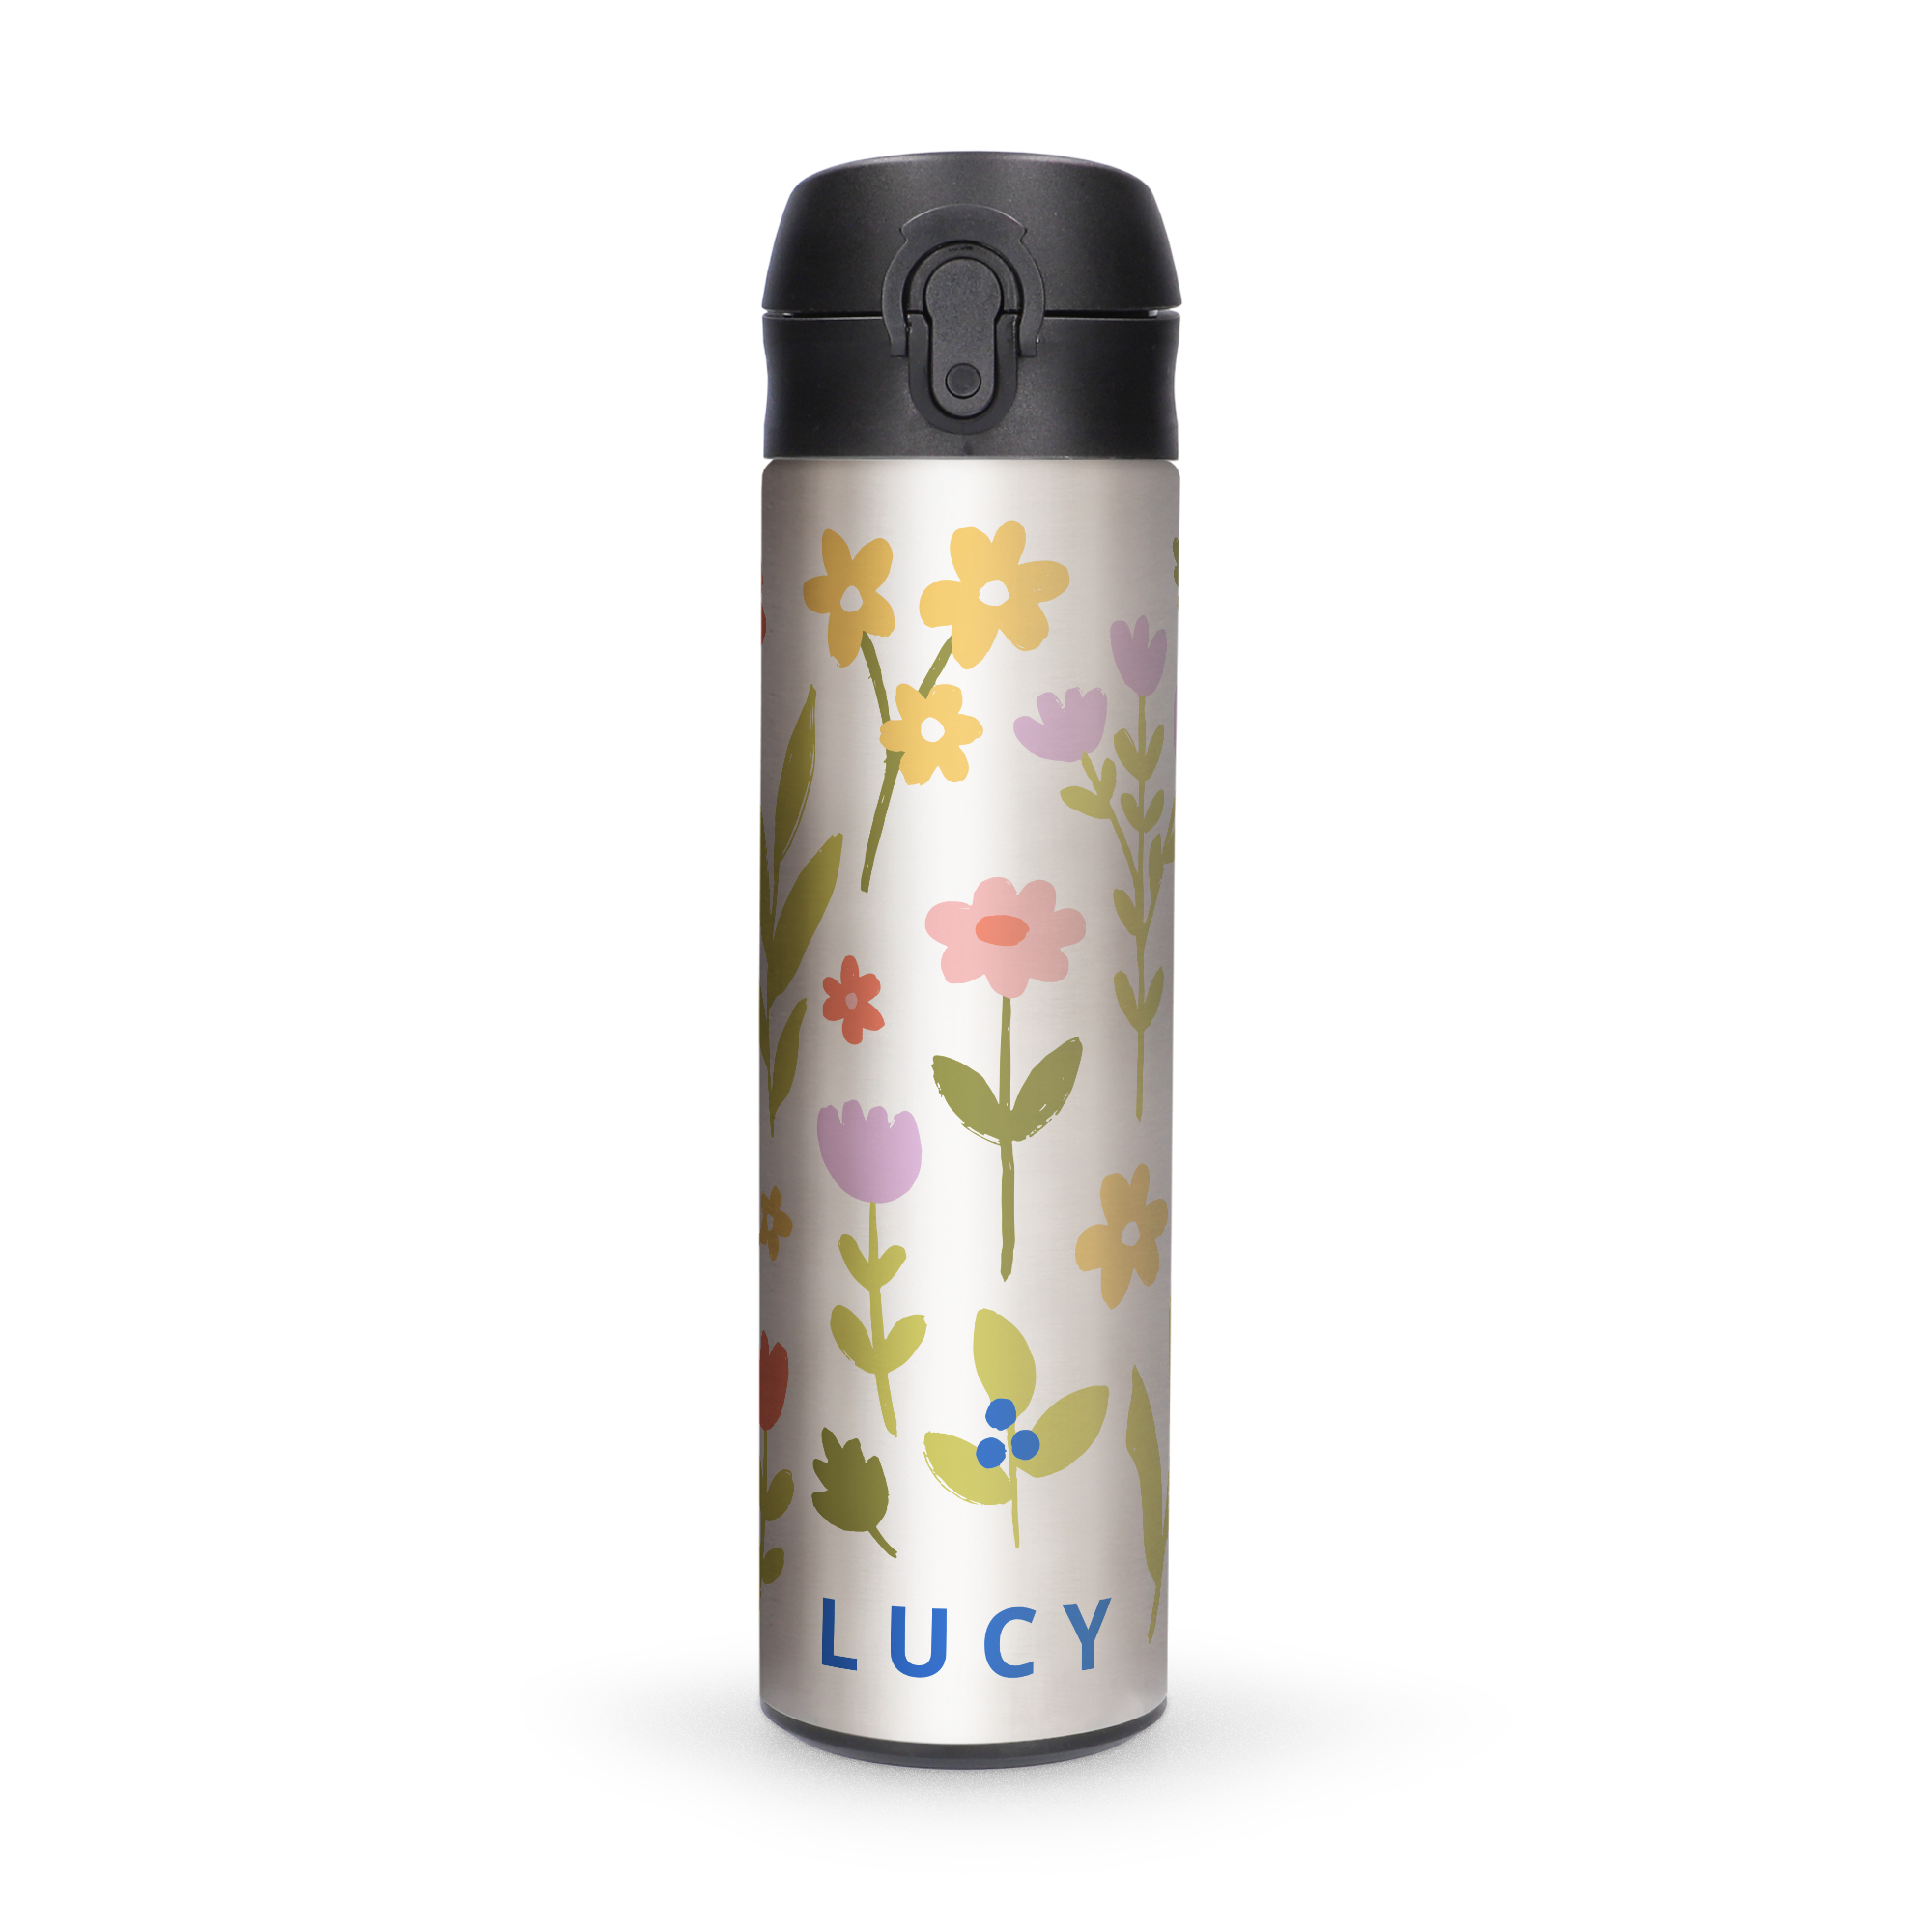 Luxusní personalizovaná láhev s vodou „pop top“ - hliníkový vzhled